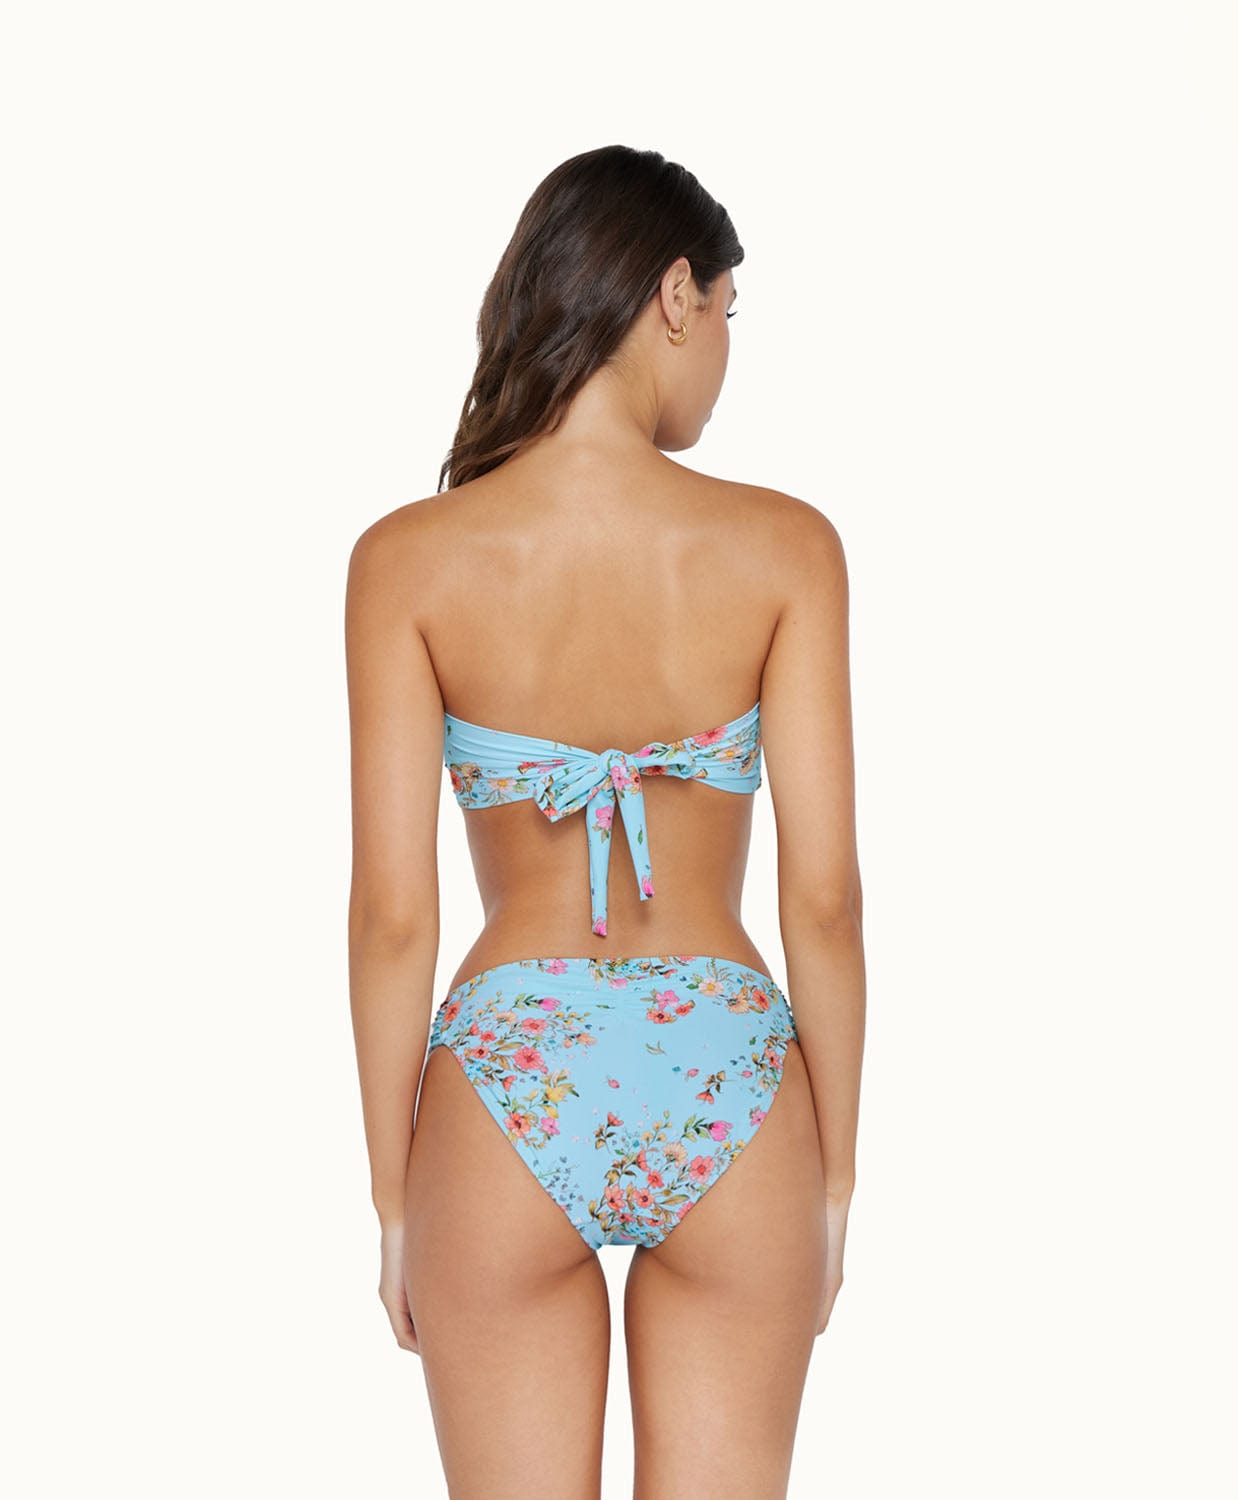 Trendy & Luxury Bikini Tops & Bottoms - PQ Swim – PQ Swim (PilyQ)